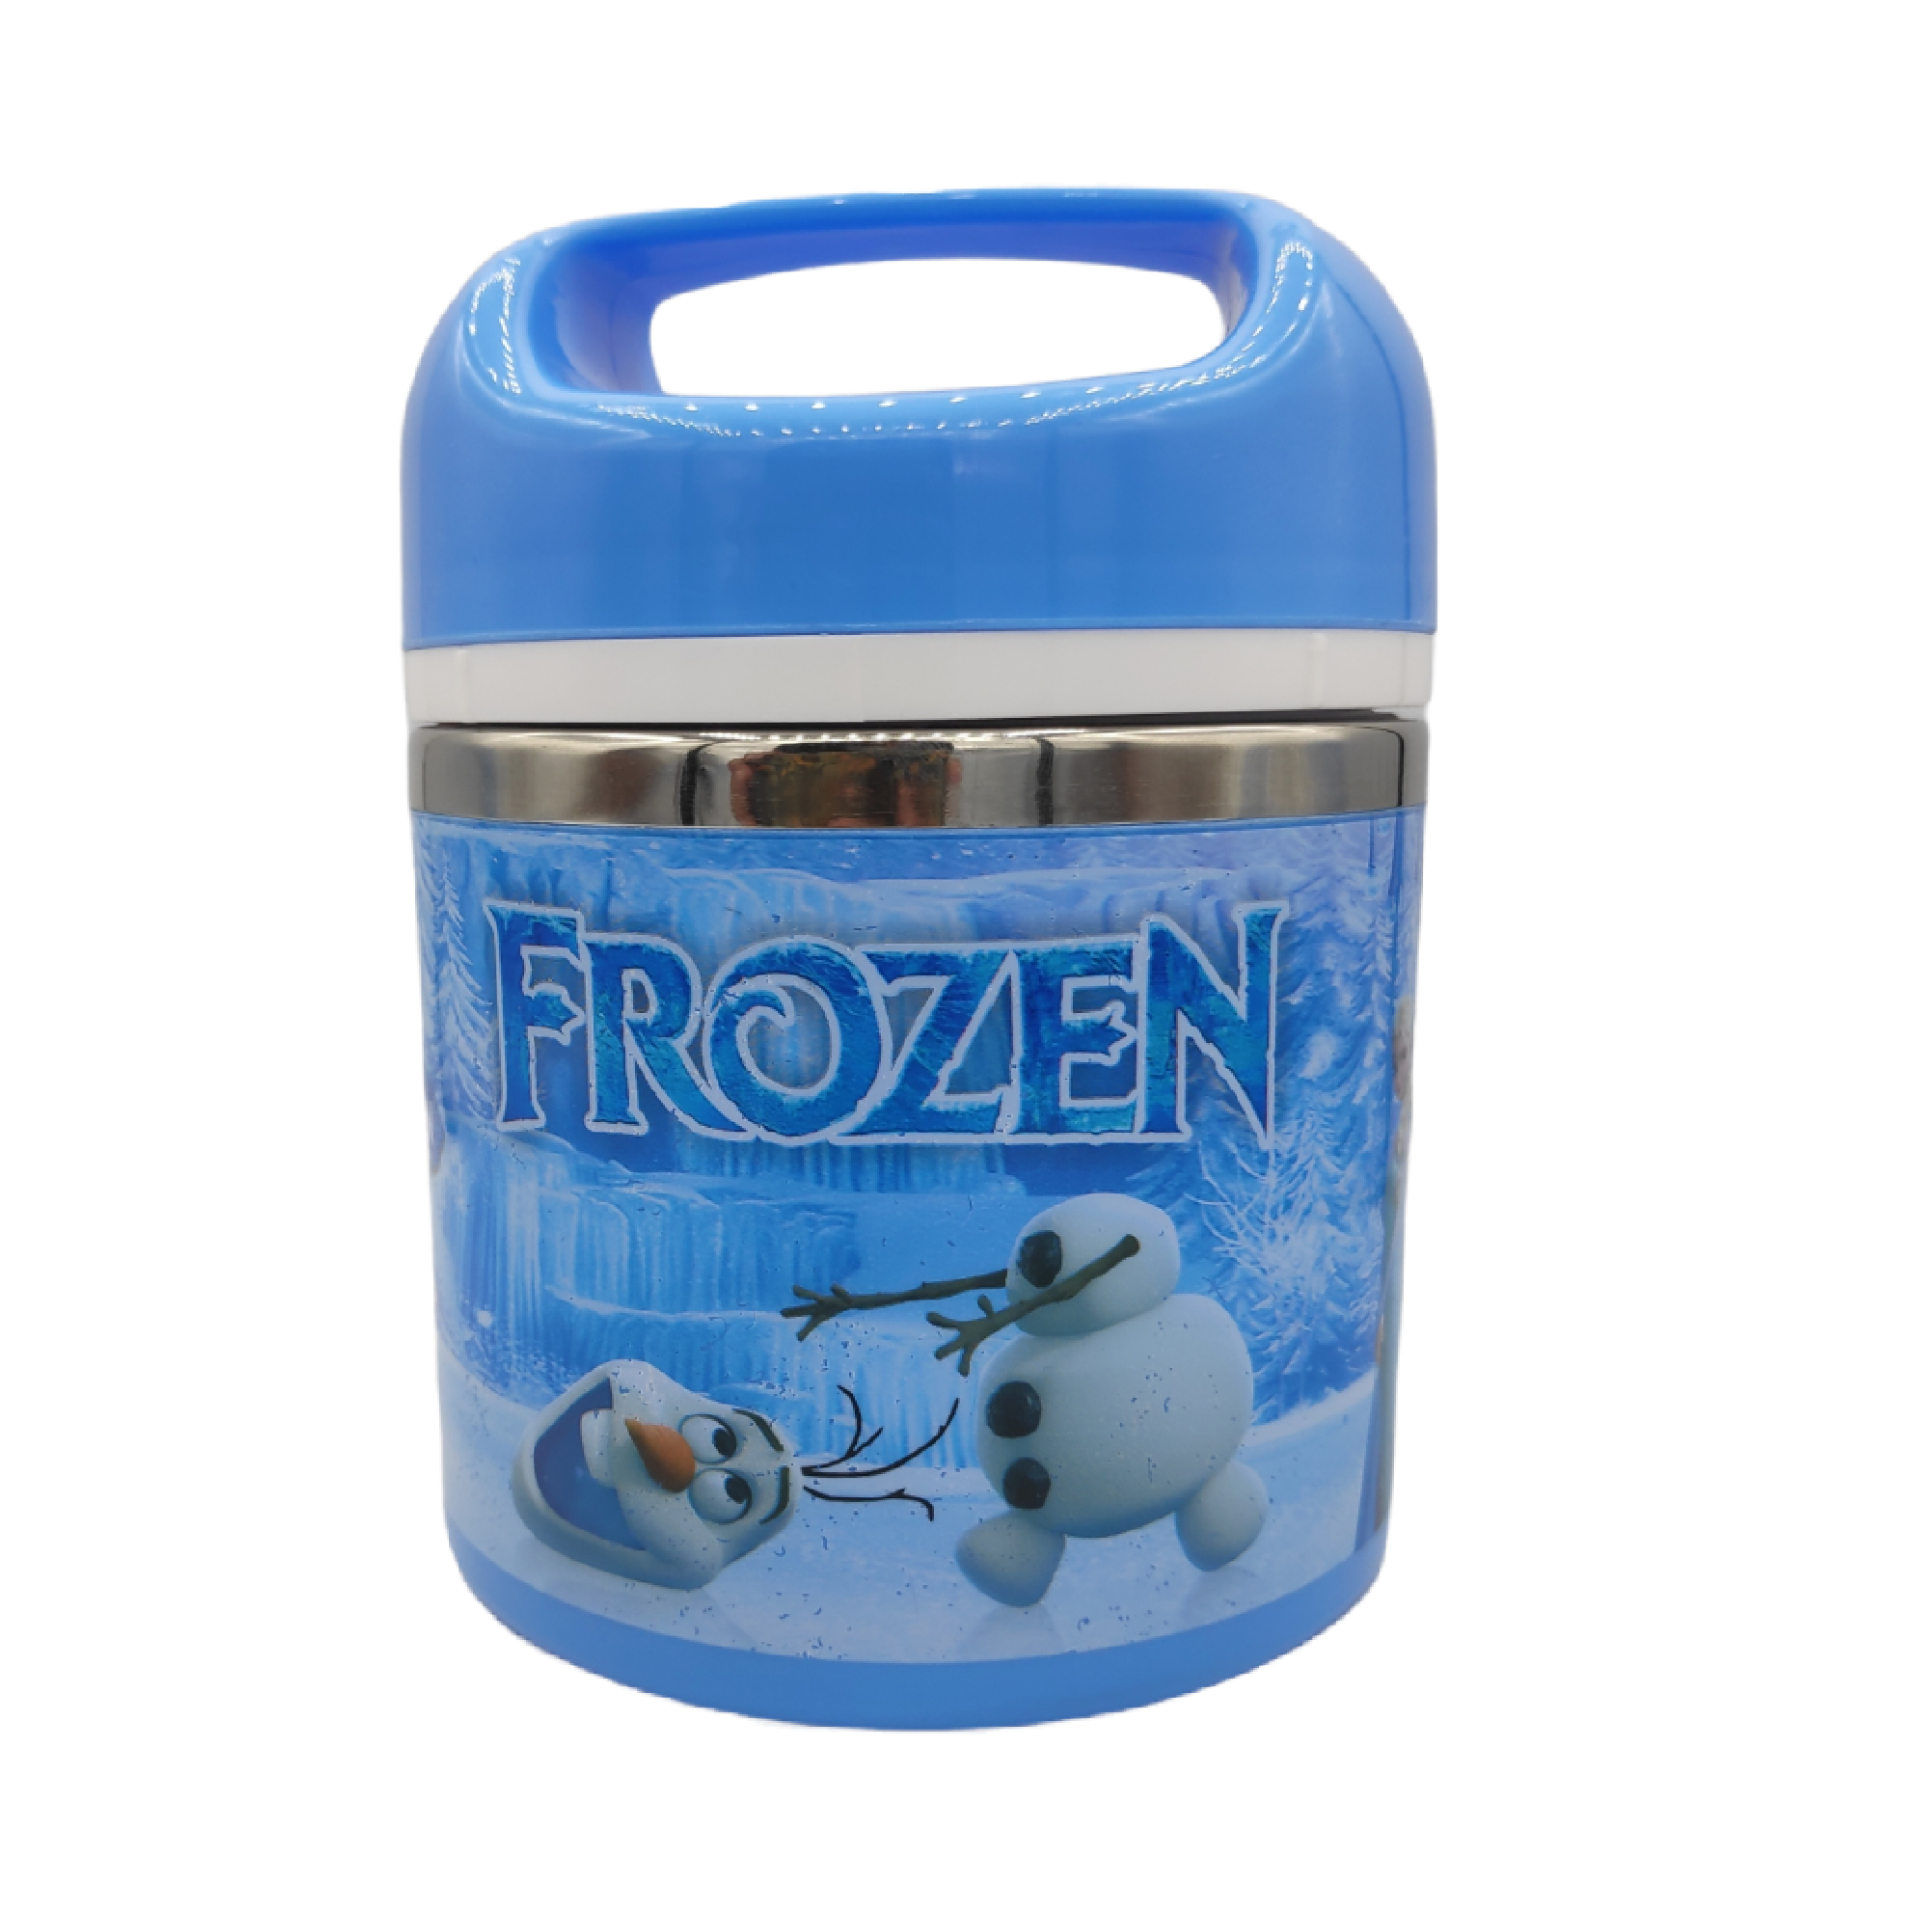 ظرف غذای کودک مدل frozen